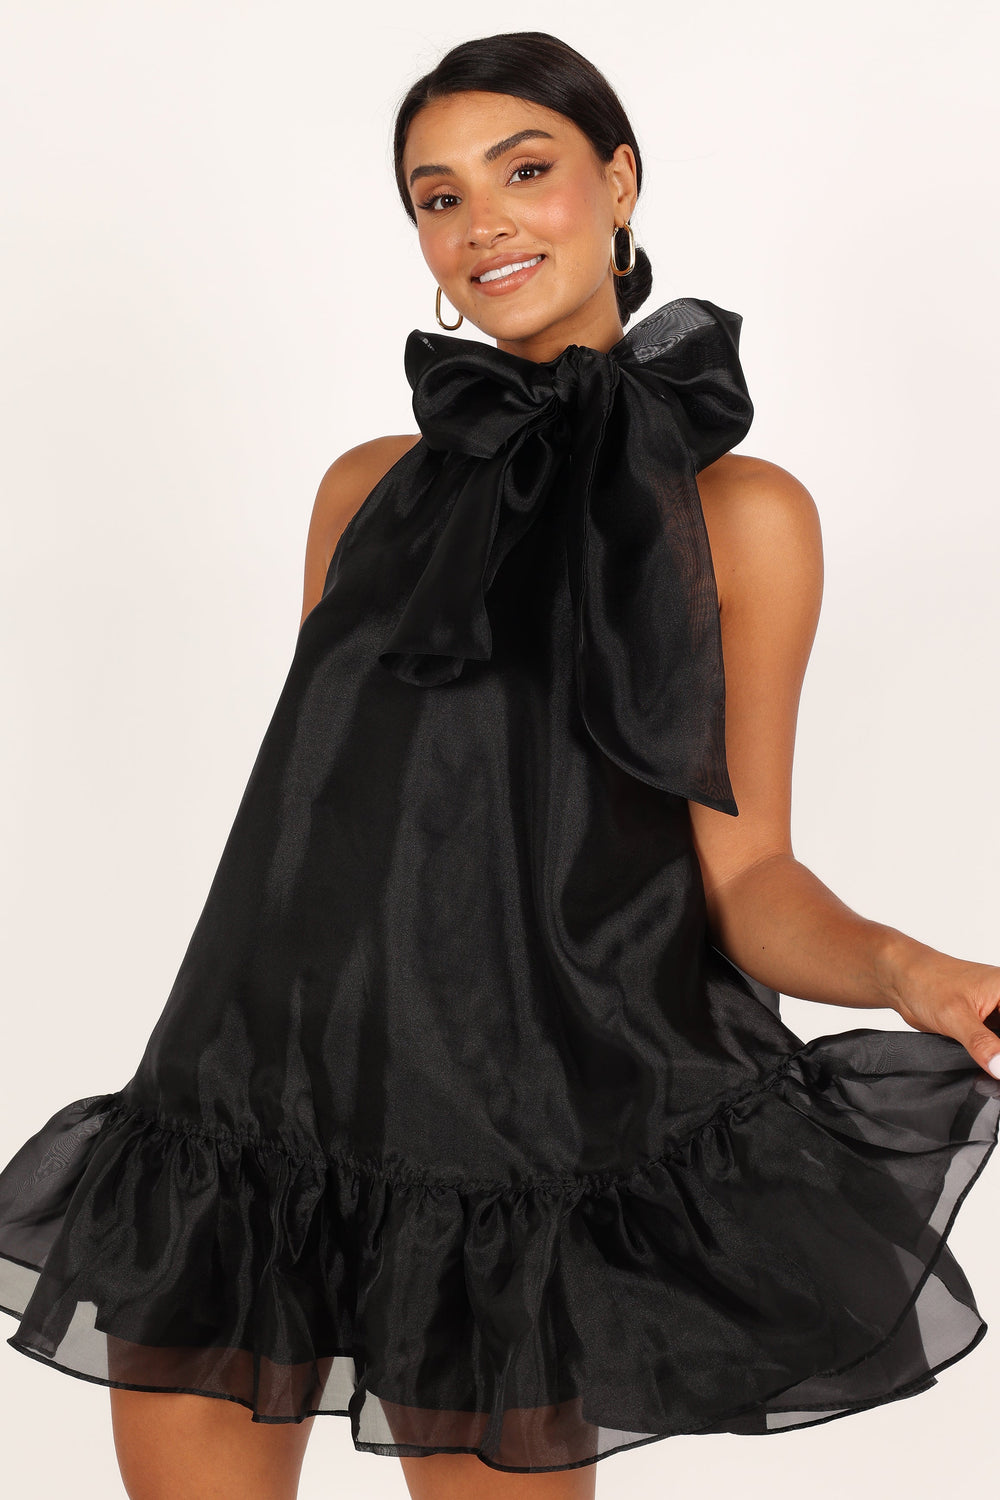 Petal and Pup USA DRESSES Sophia Bow Mini Dress - Black